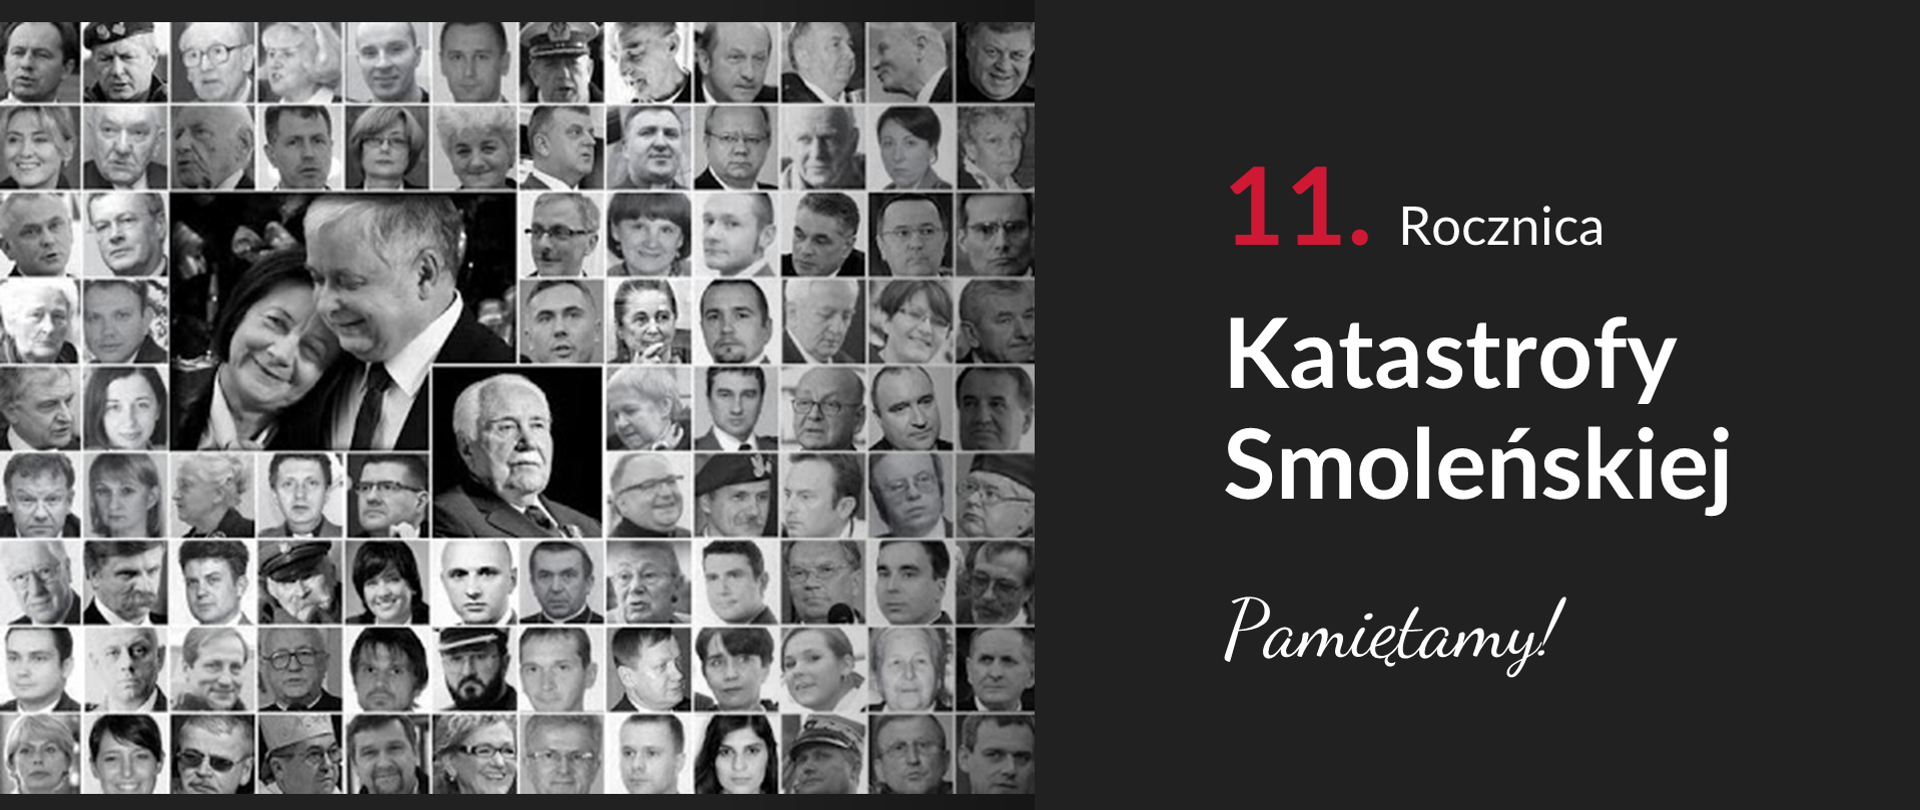 Grafika ze zdjęciami ofiar katastrofy. Obok tekst: "11. rocznica Katastrofy Smoleńskiej. Pamiętamy!"